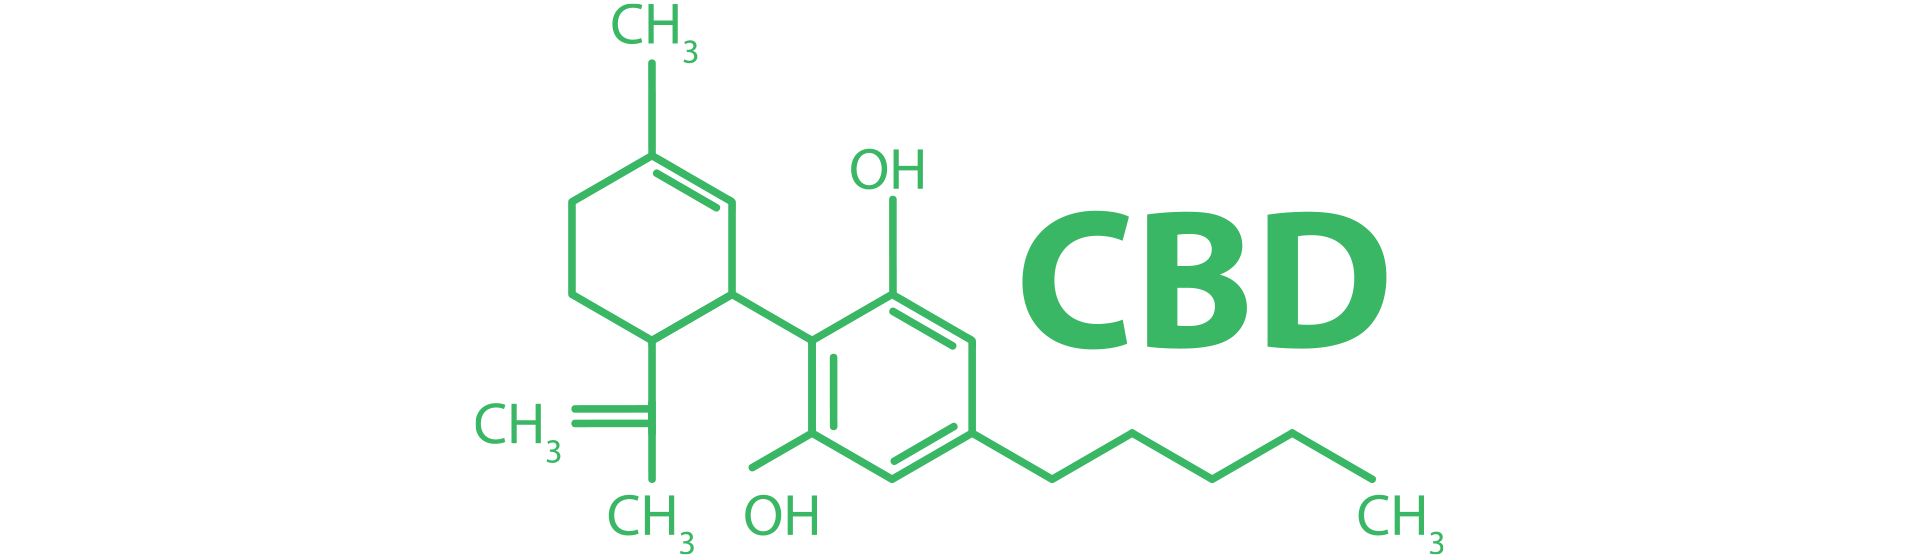 Formel-chemische-CBD